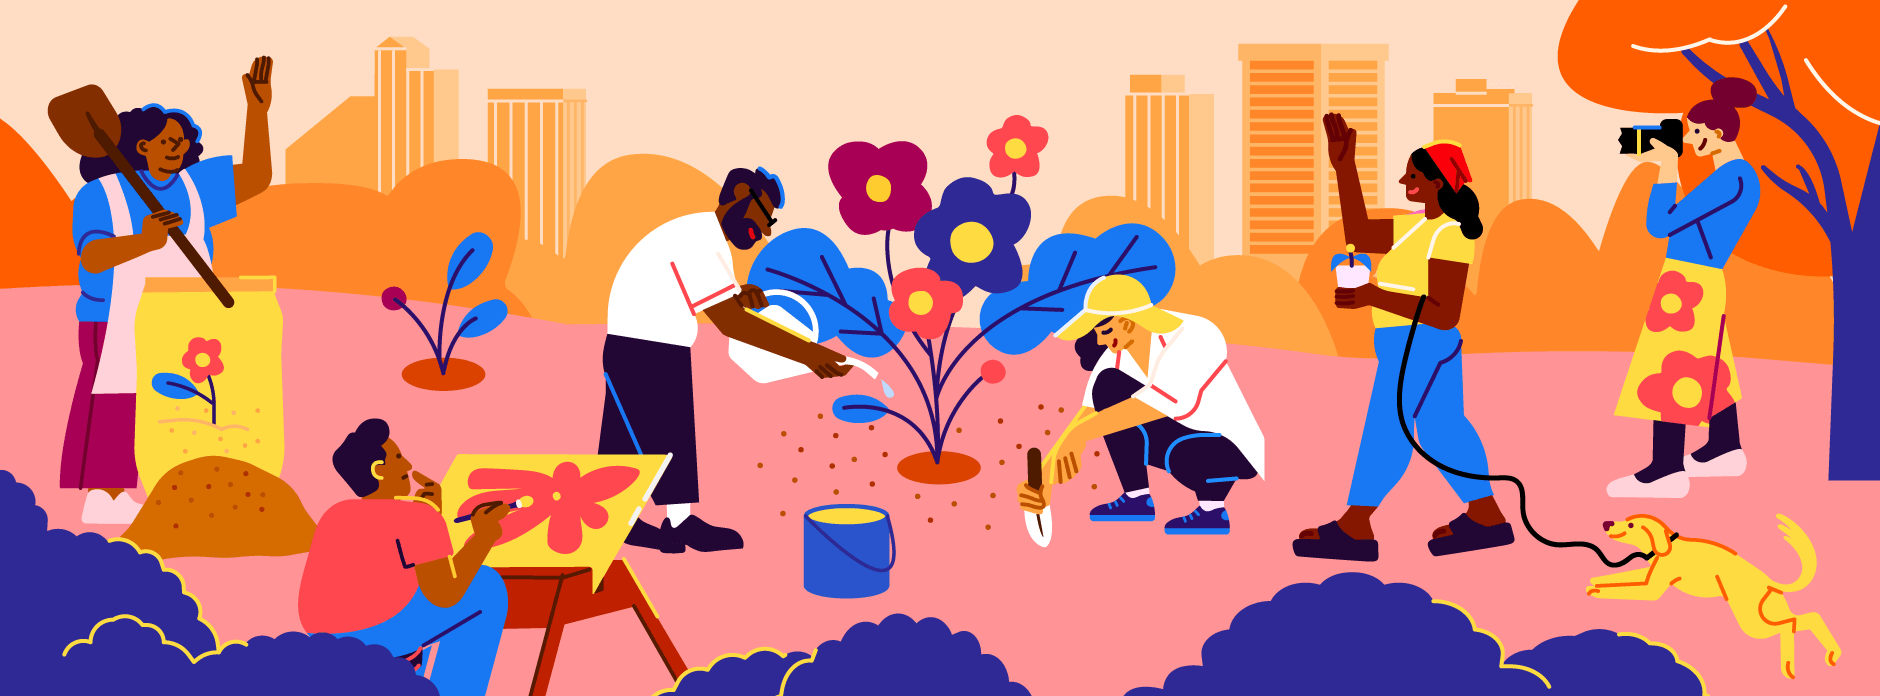 Digital artwork of people tending a flowering plant